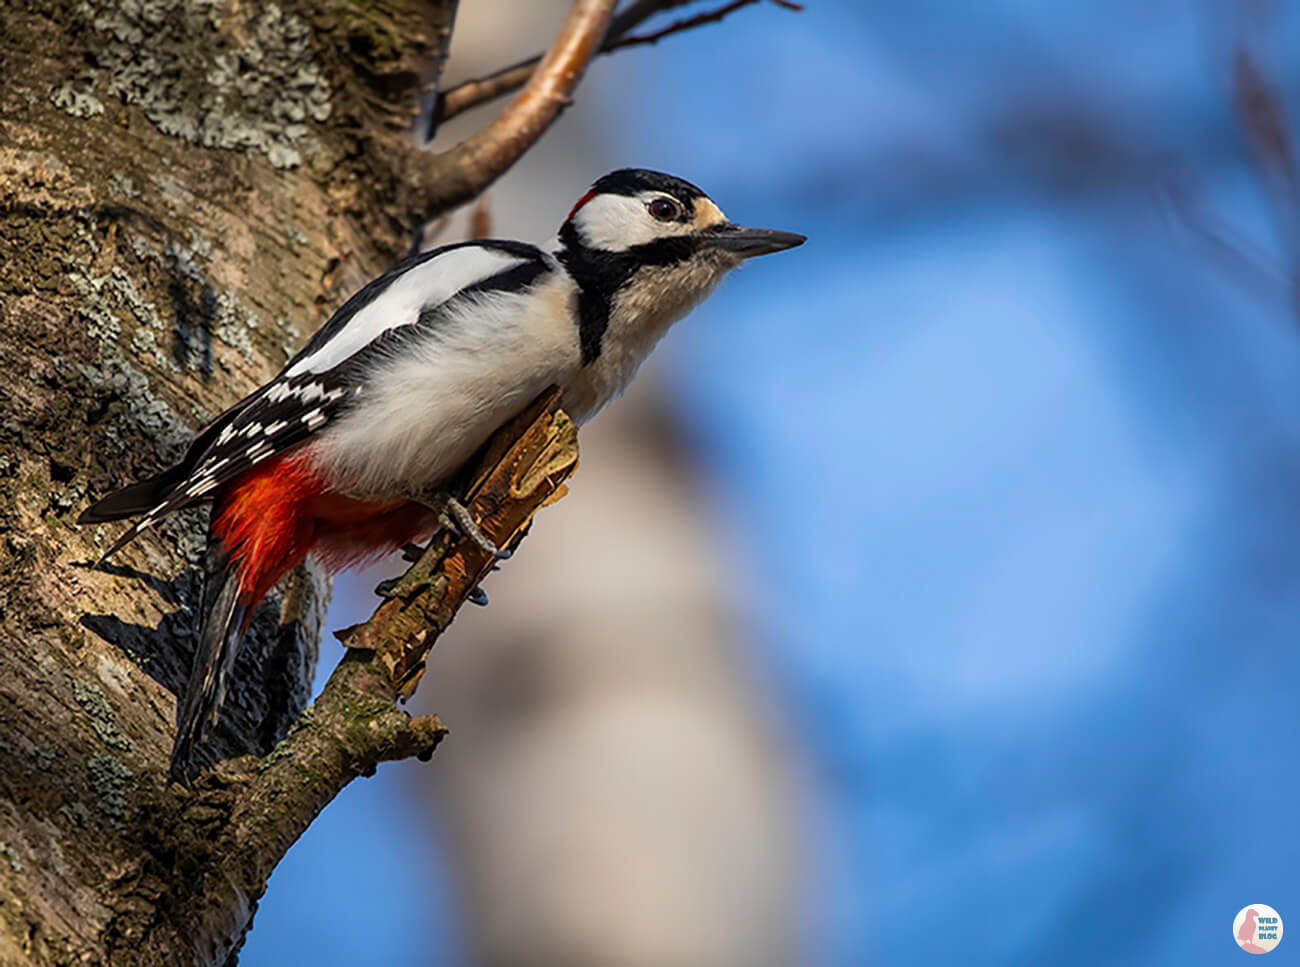 Great spotted woodpecker, Hanasaari, Espoo